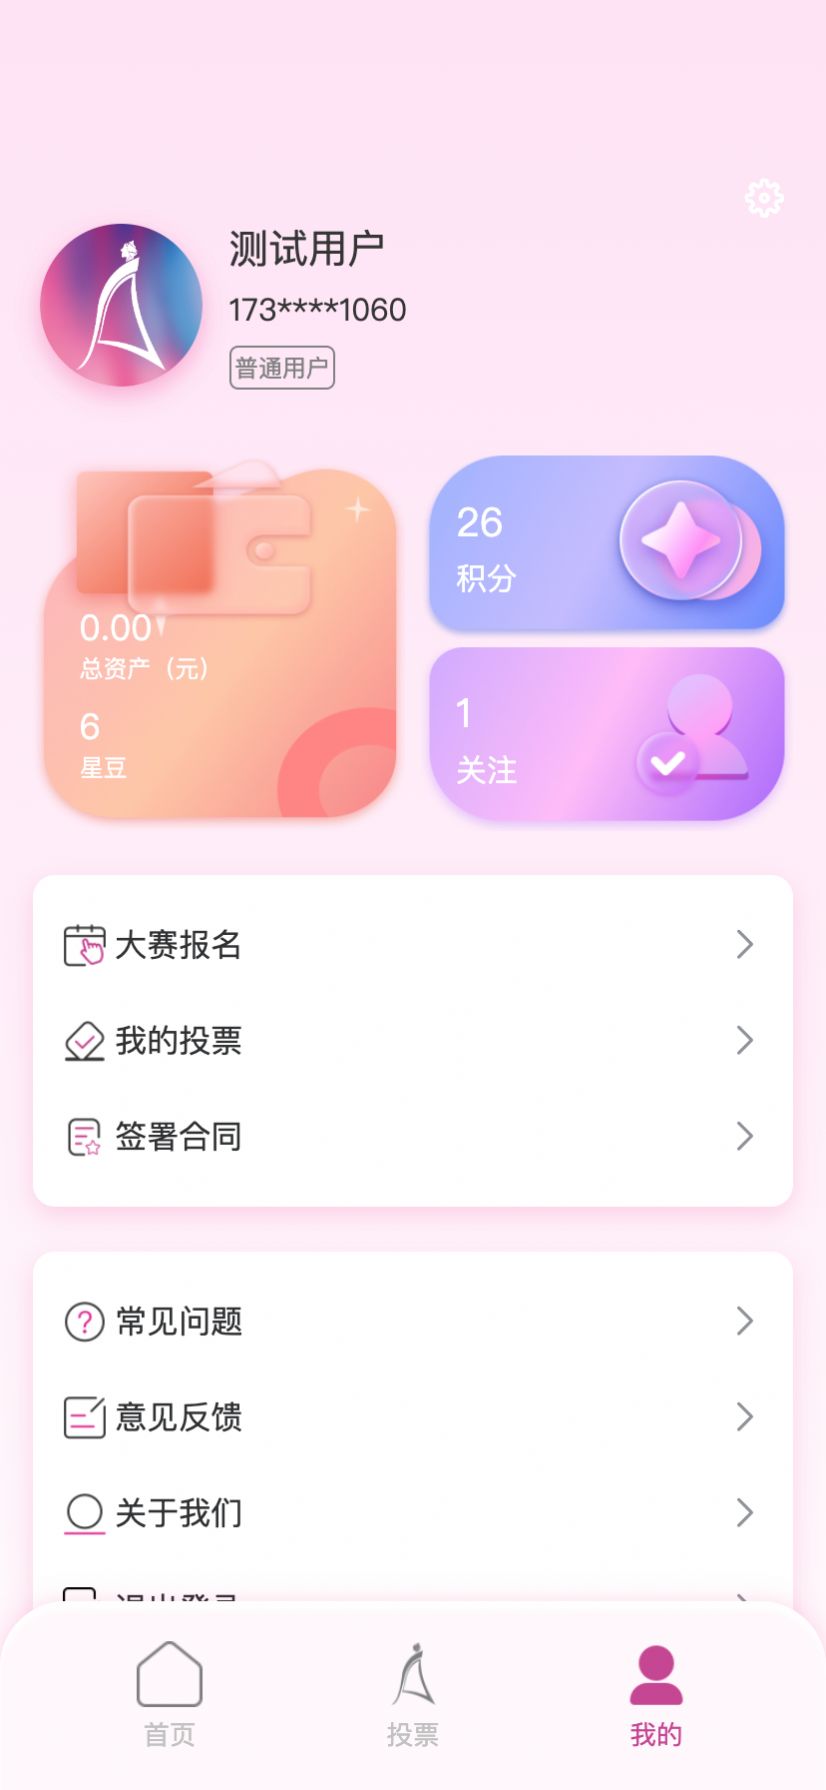 亚洲小姐竞选手机版app图片1